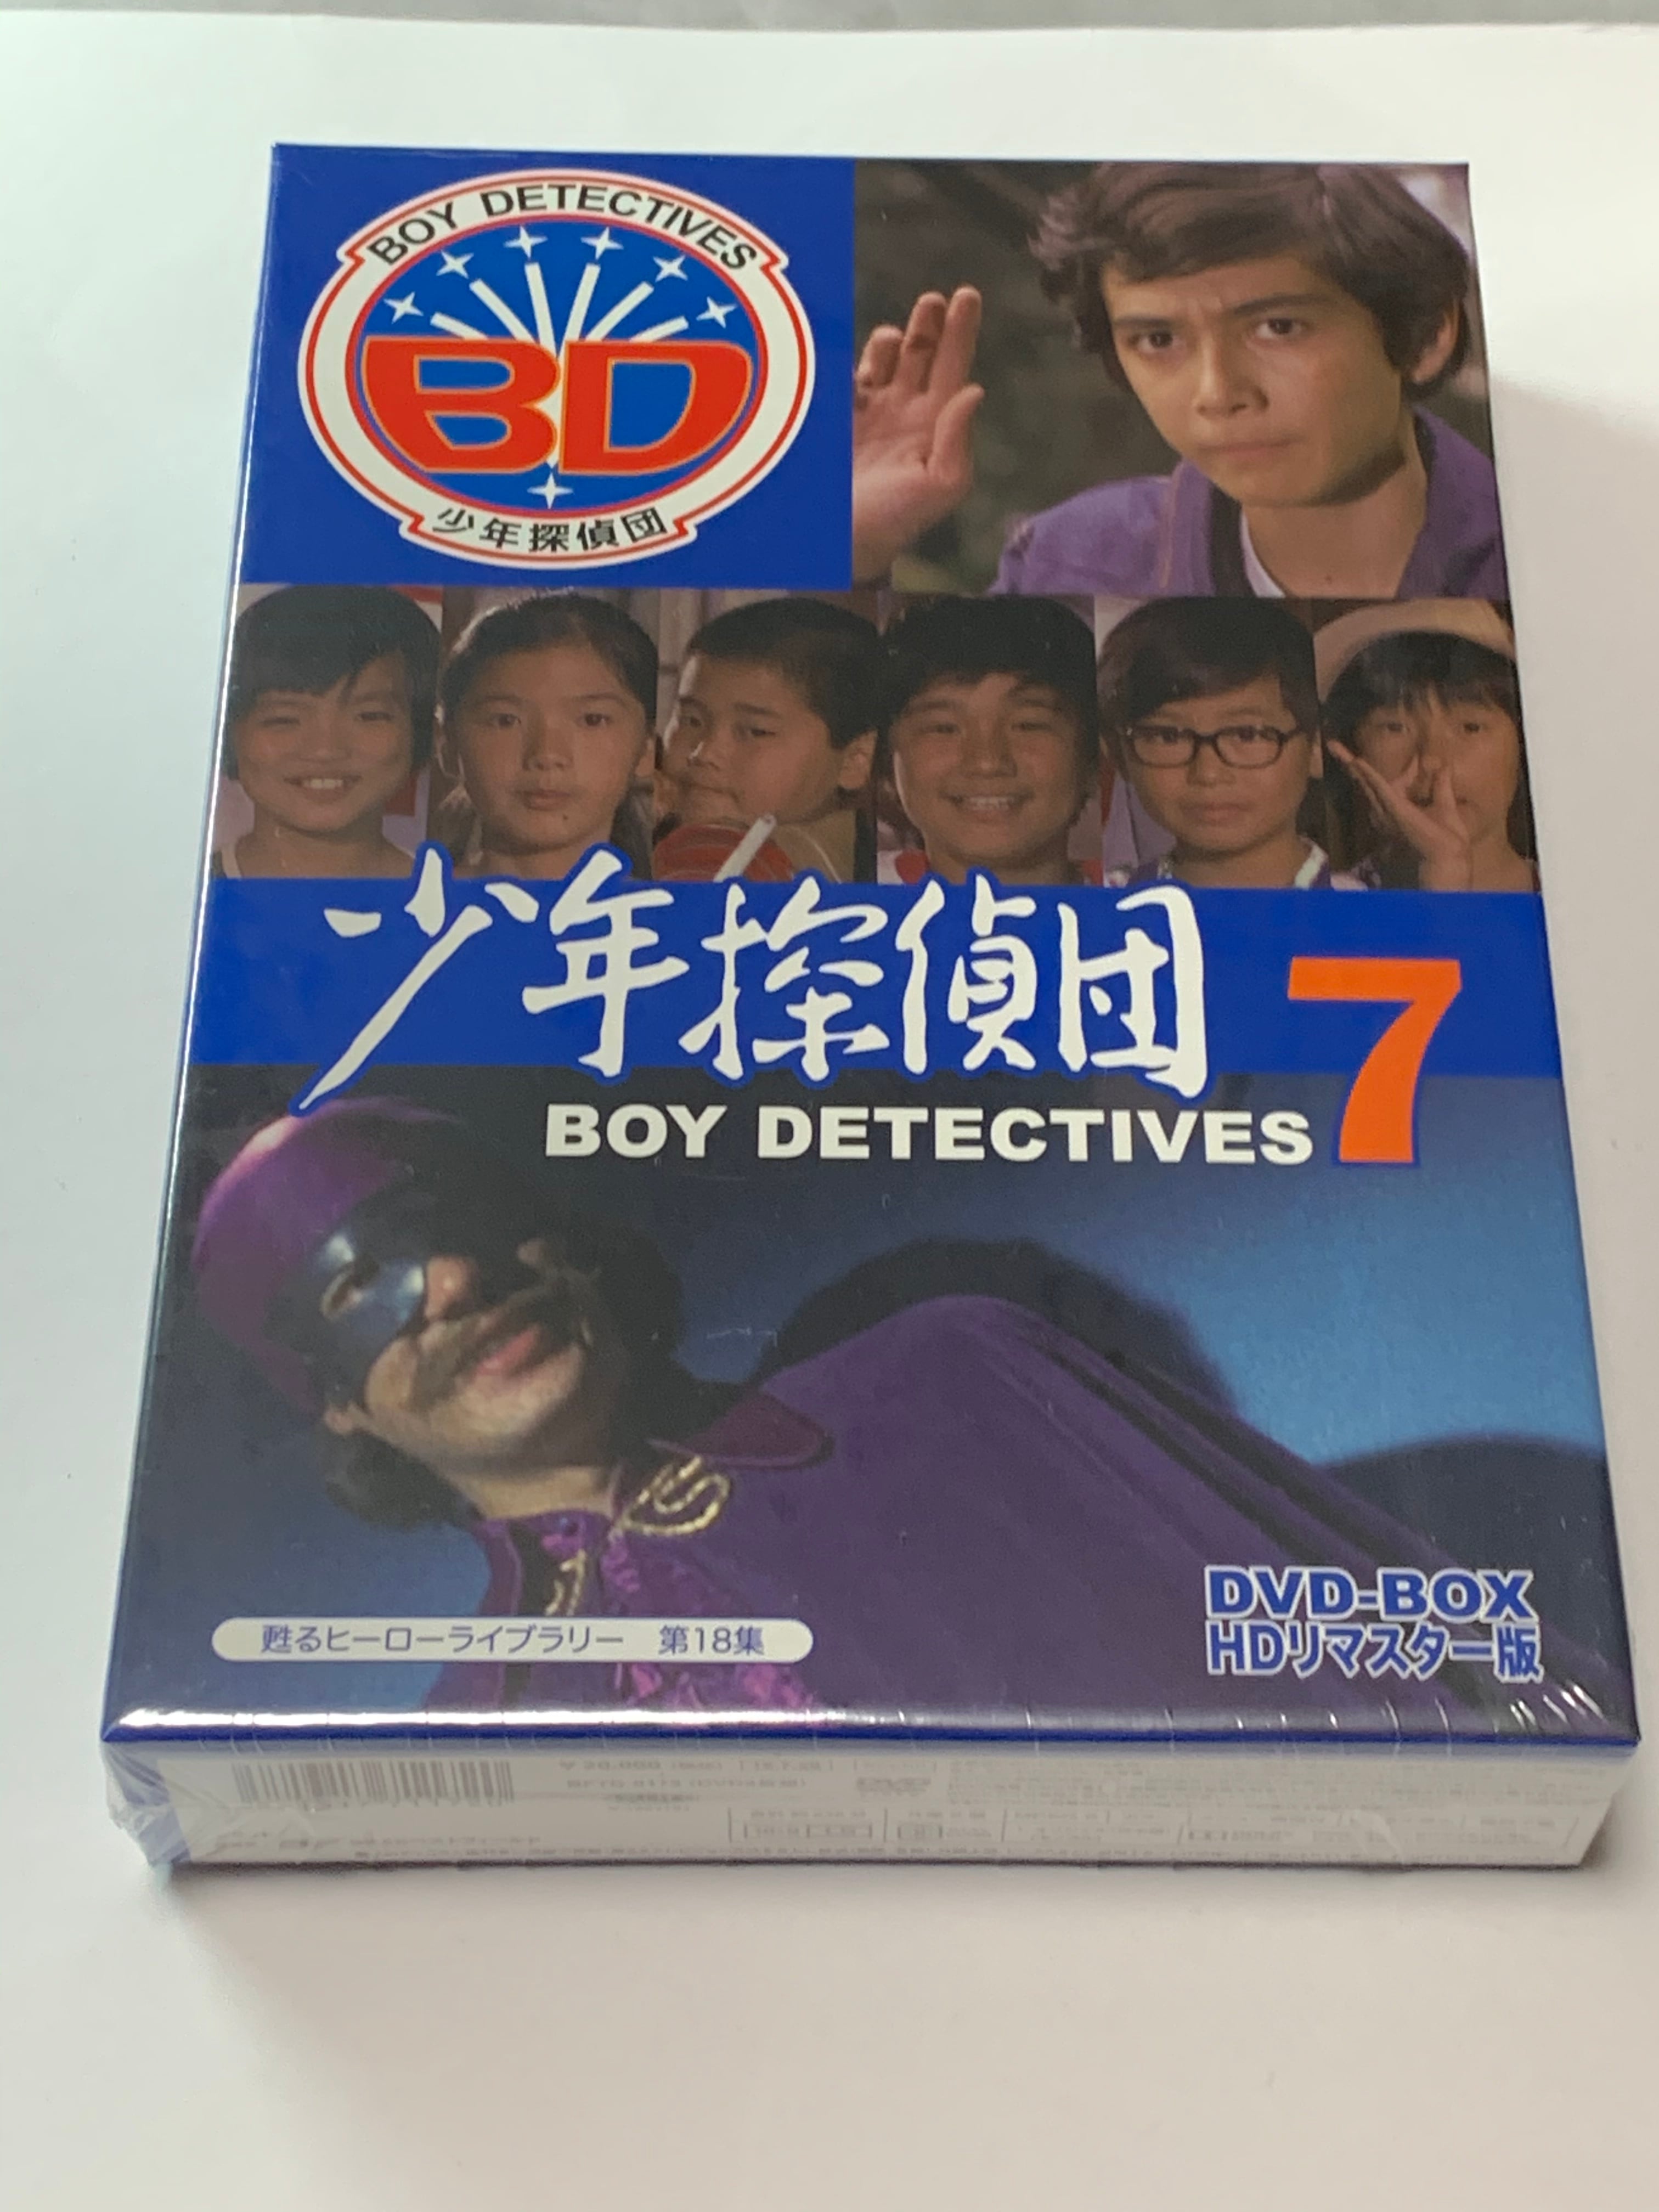 少年探偵団 BD7　DVD-BOX　HDリマスター版 | susunshop powered by BASE